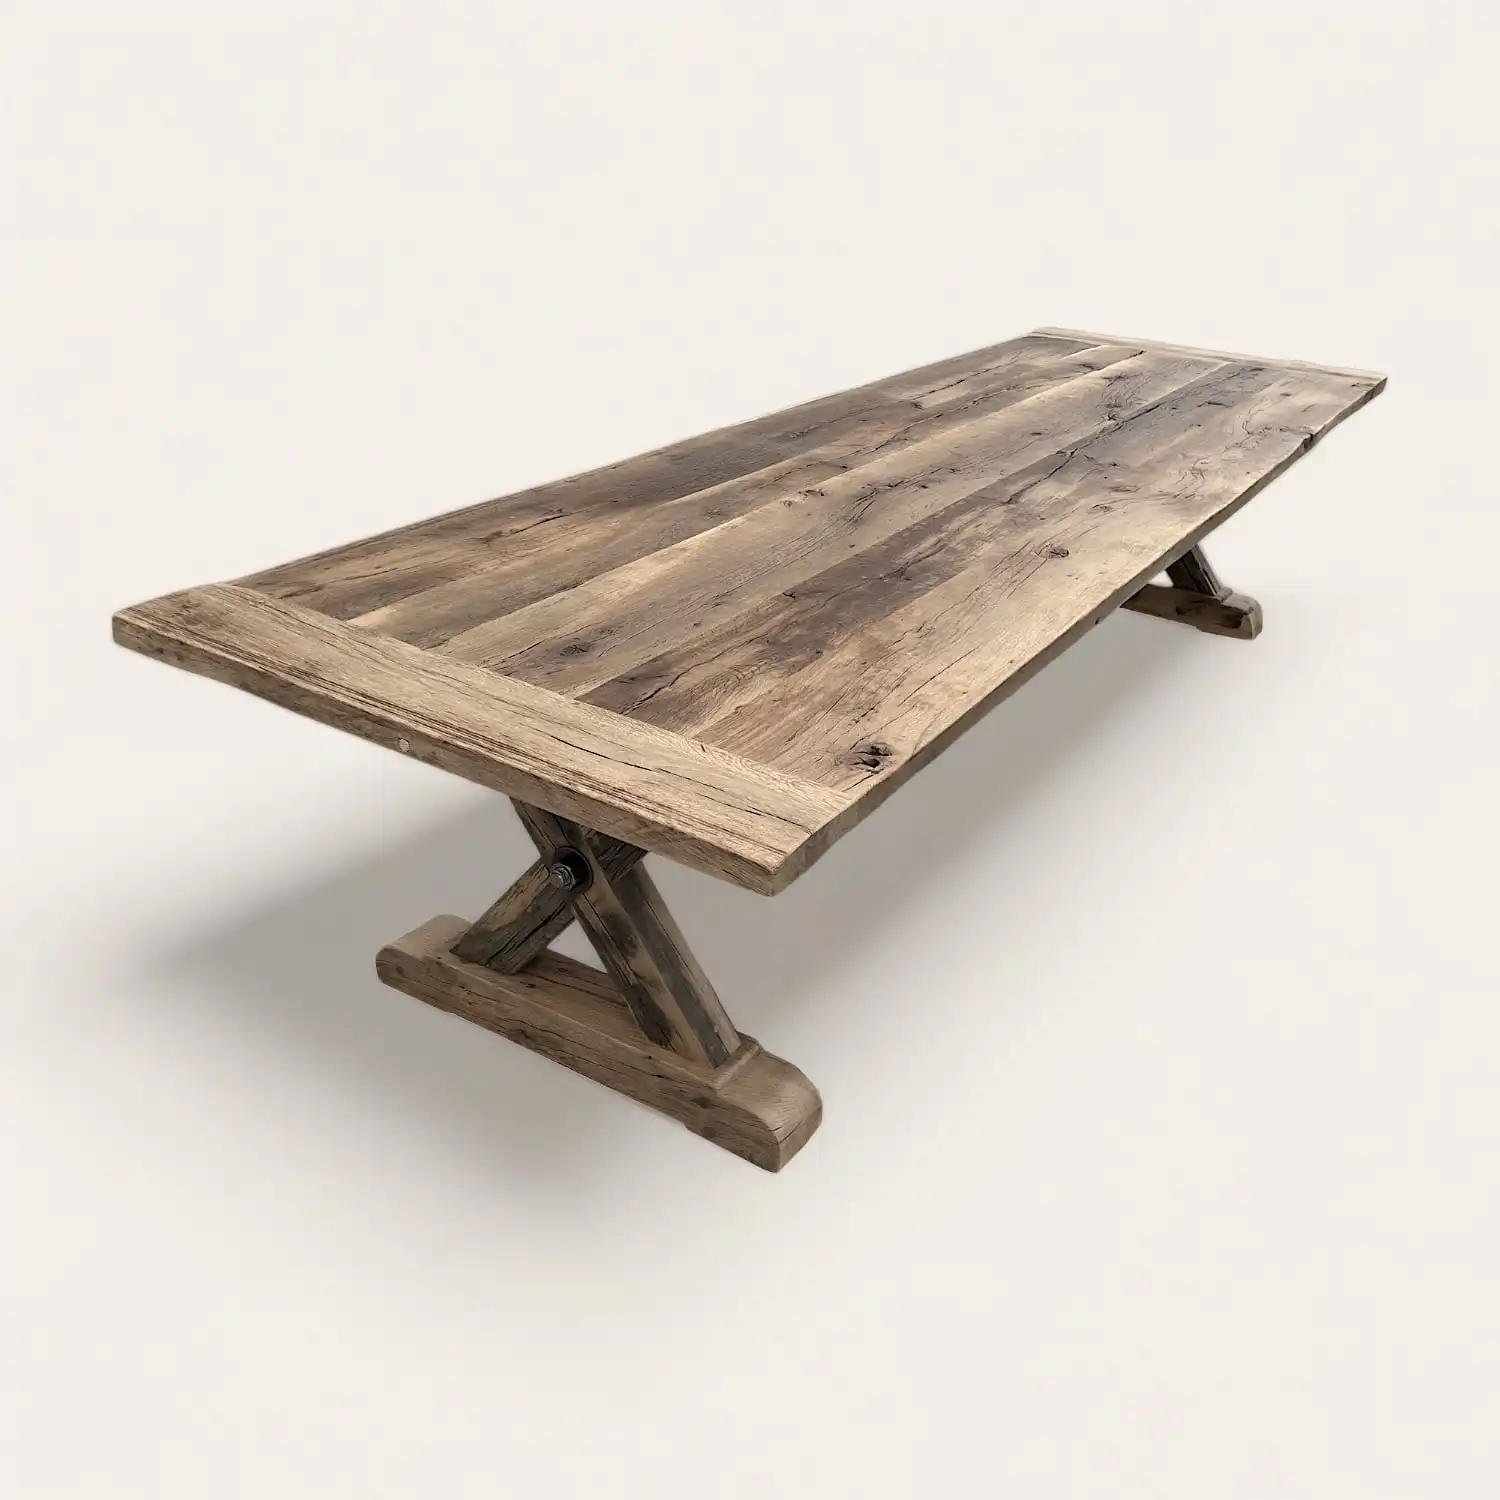  Une table à manger style campagne en bois avec une base en croix. 